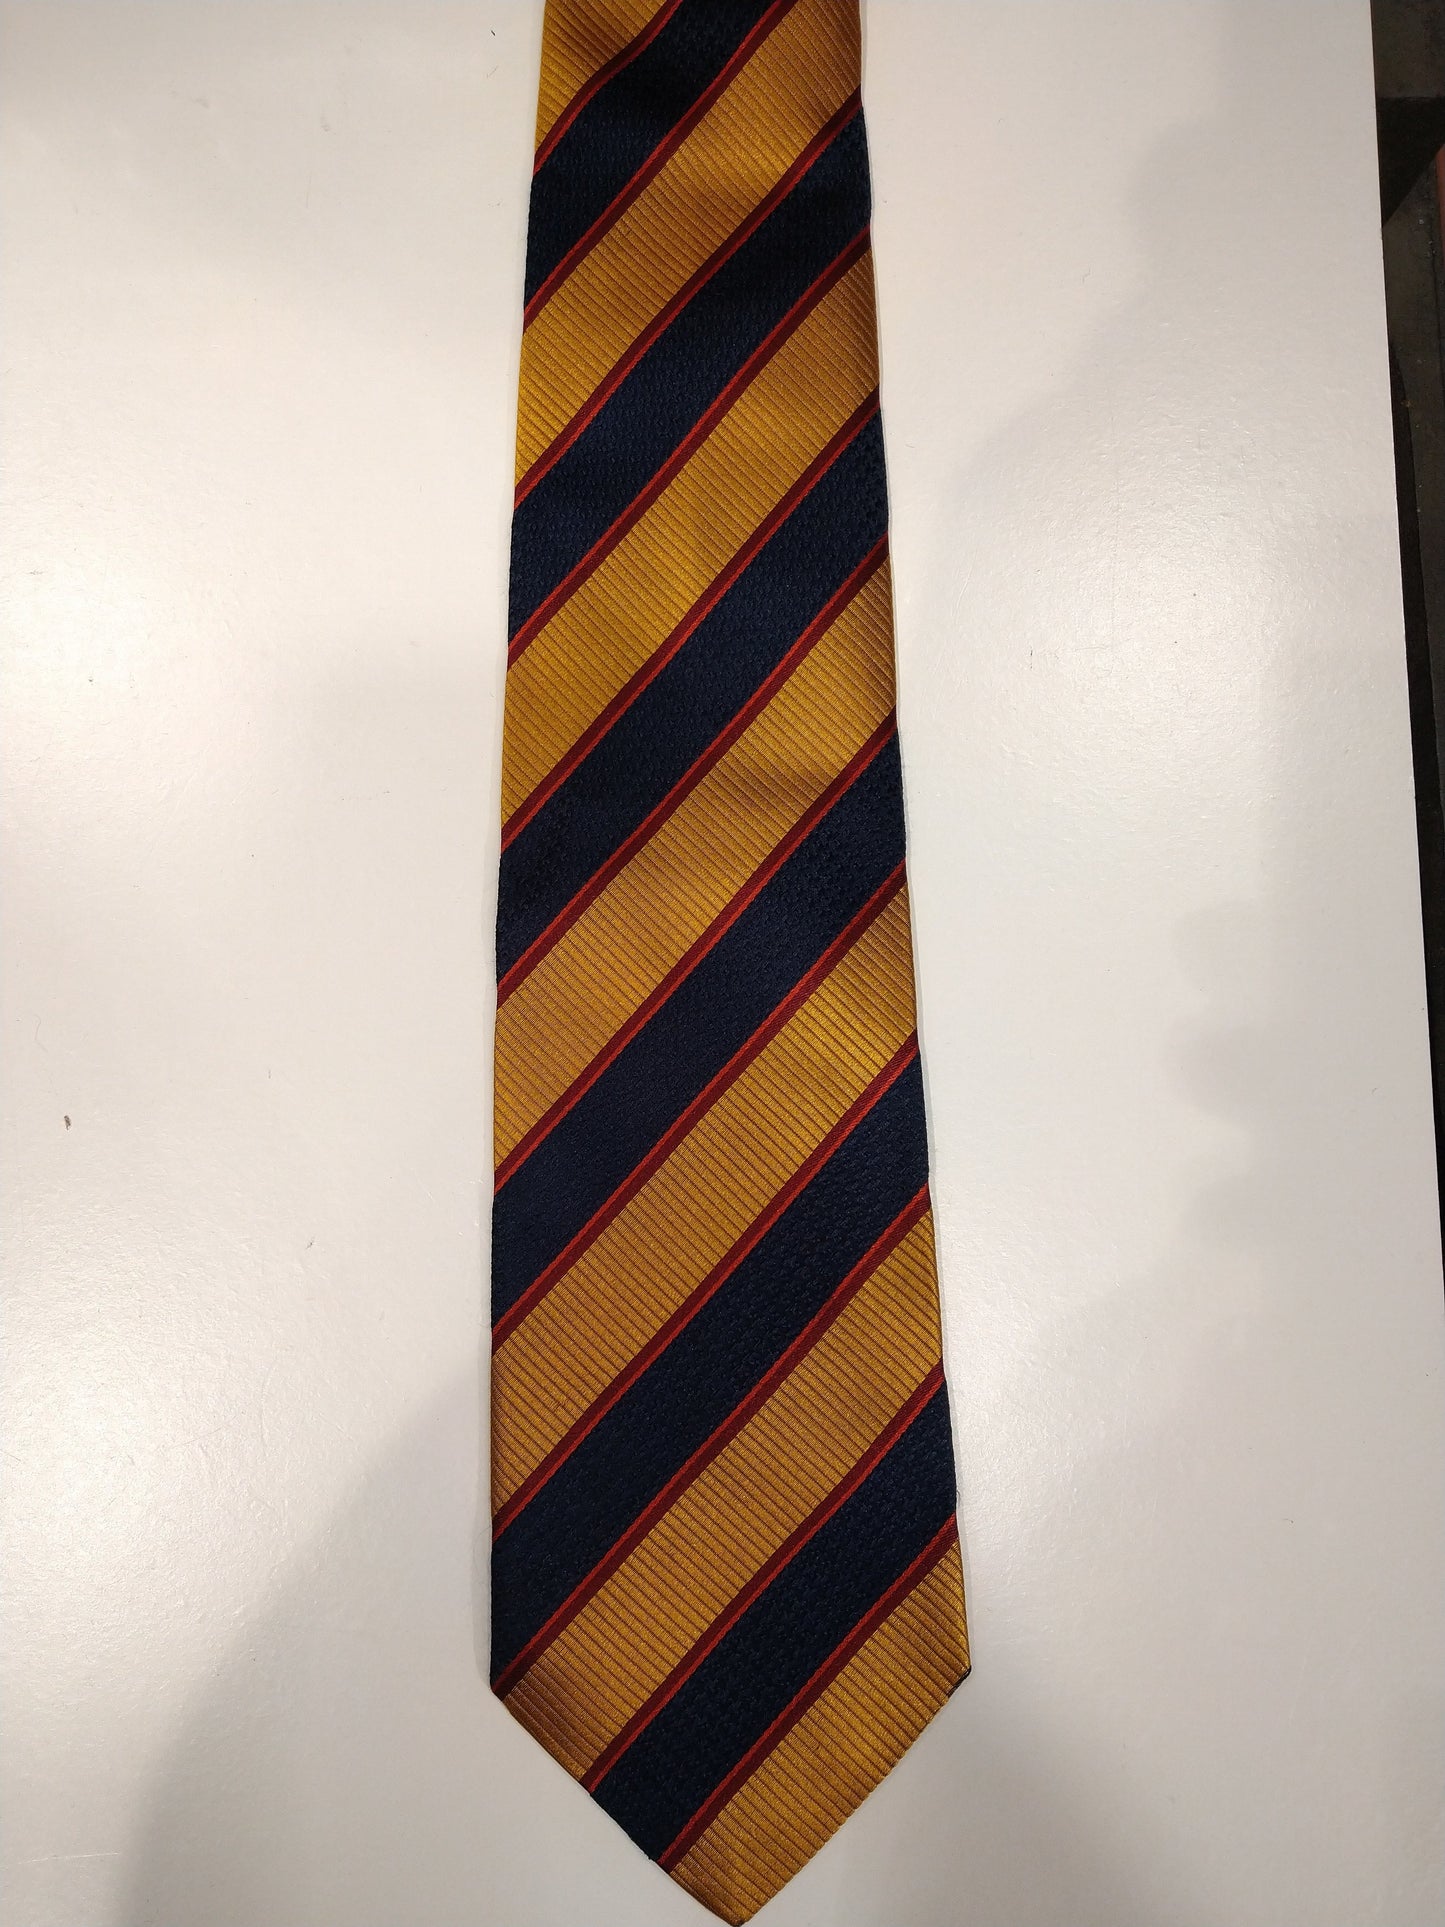 Scapa of Scotland zijde stropdas. Goud blauw rood gestreept.